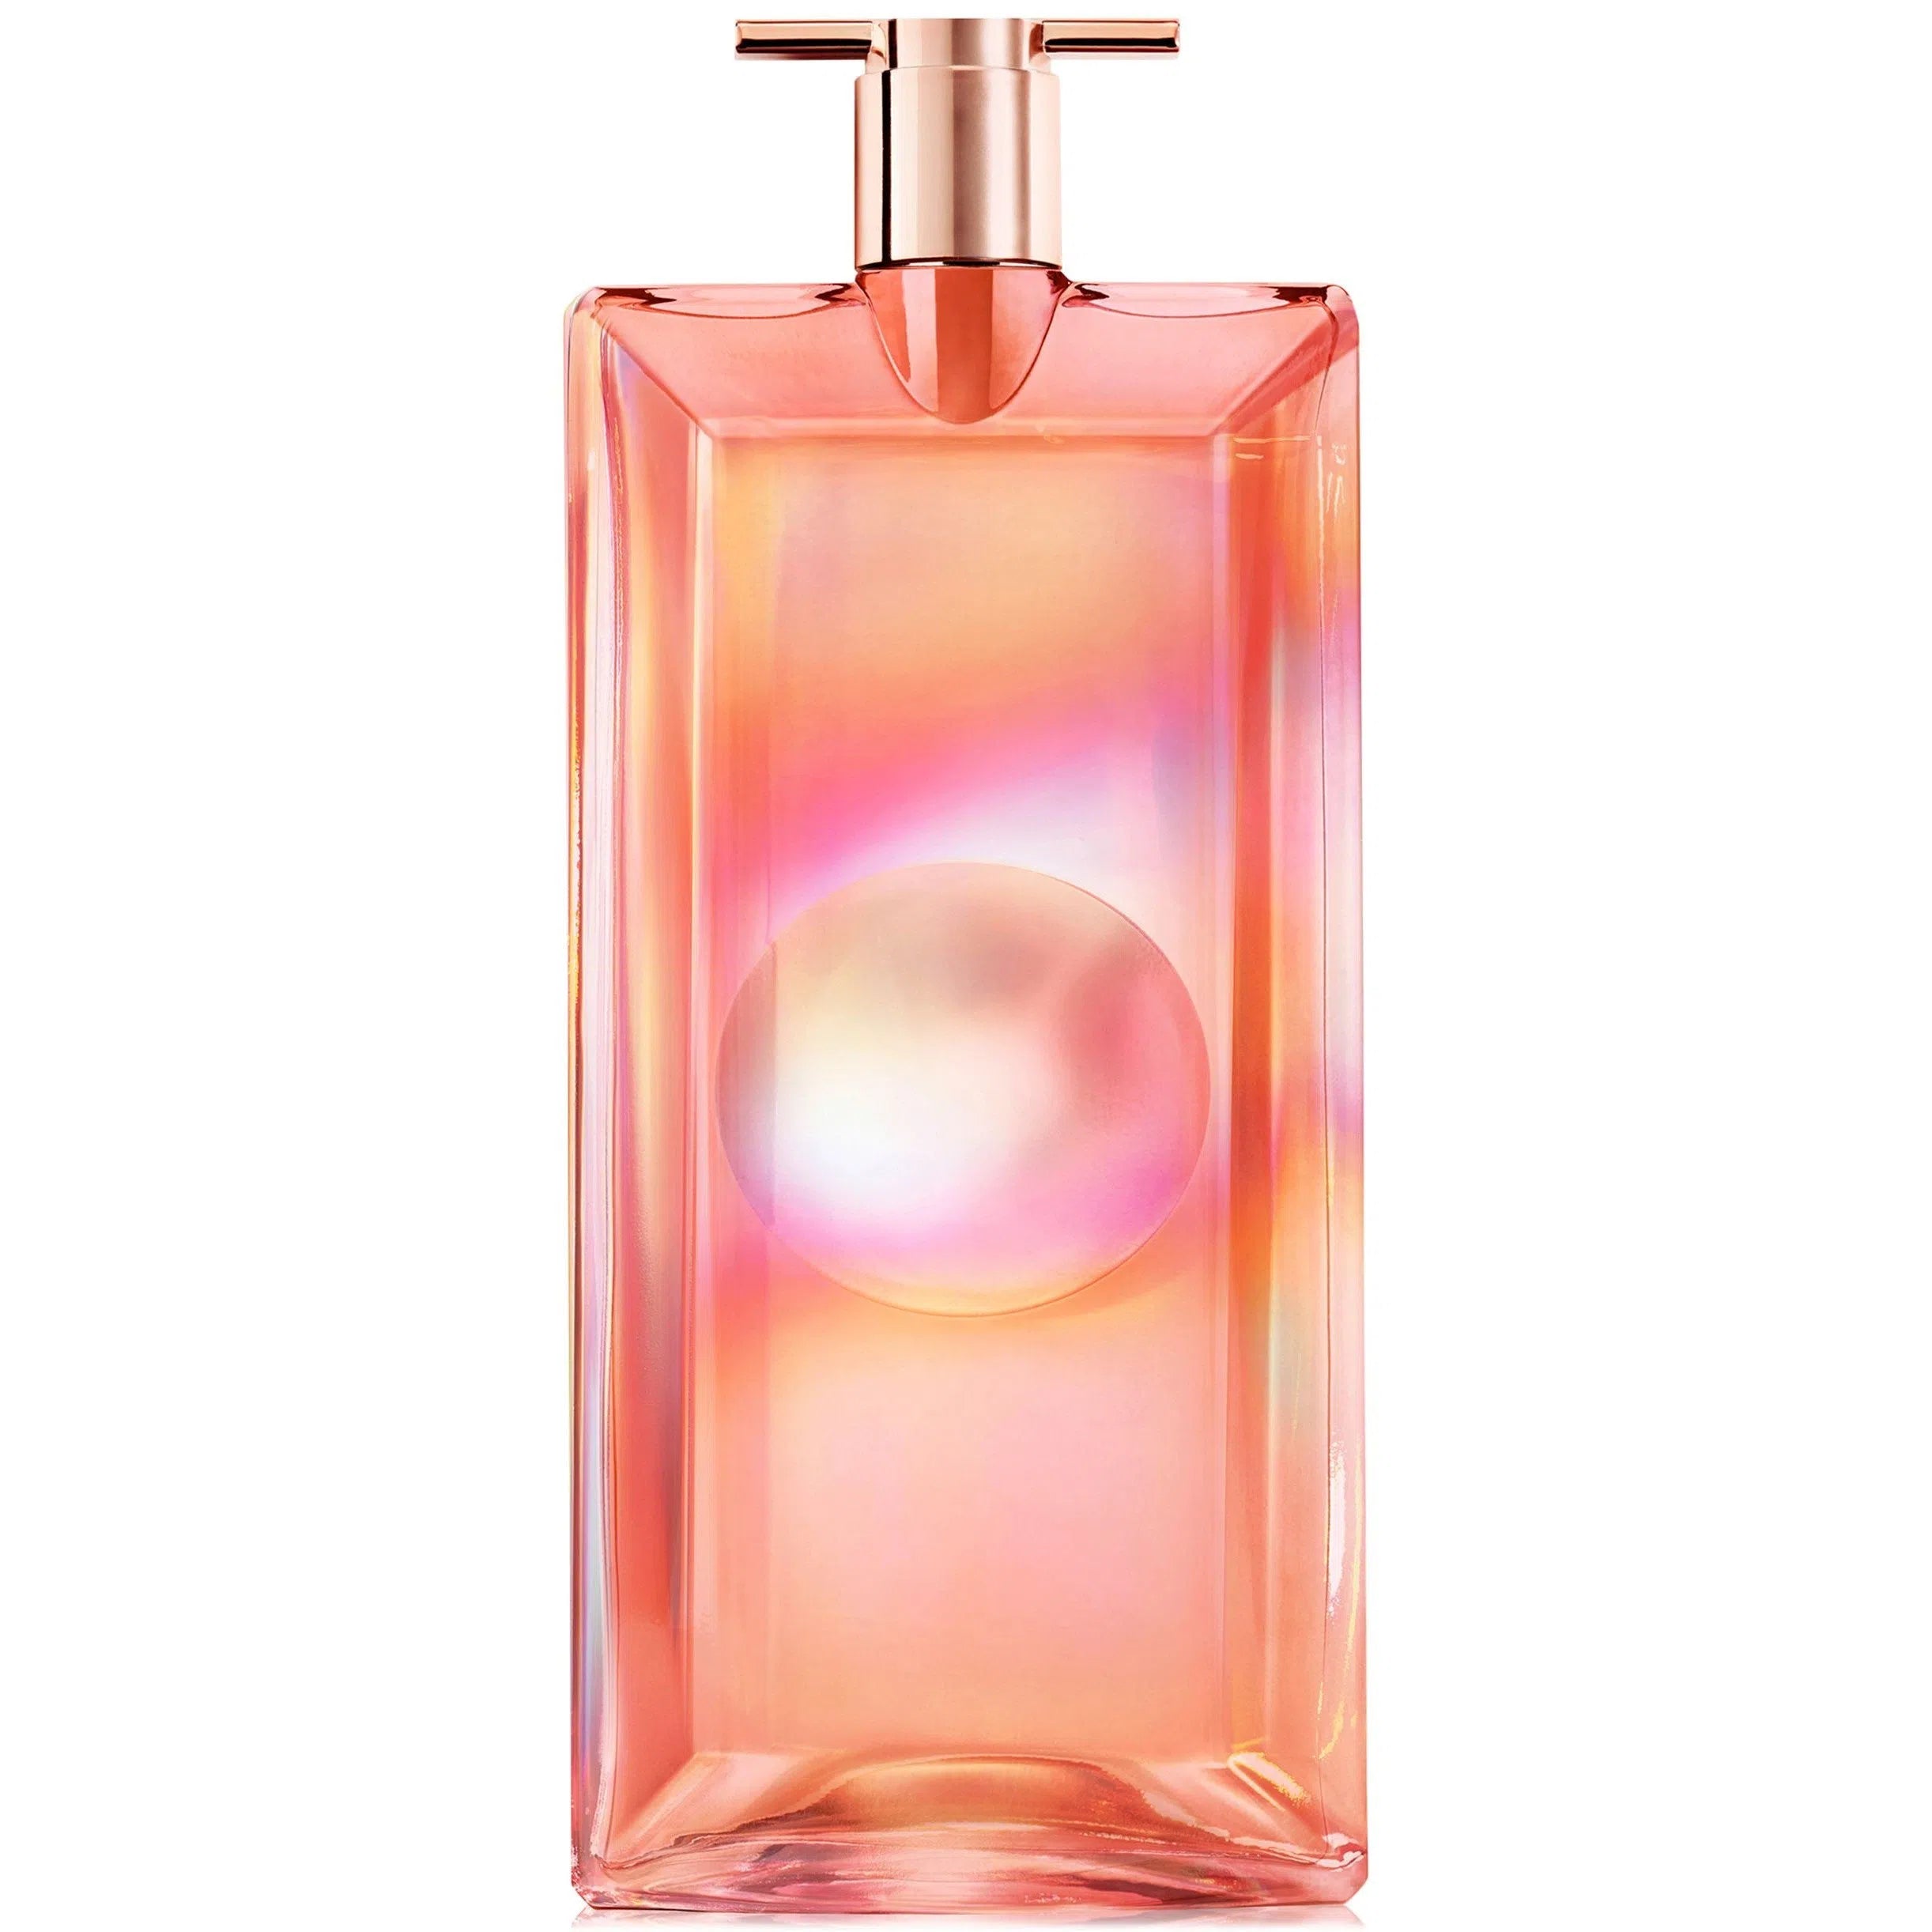 Perfume Lancôme Idole Nectar EDP (W) / 50 ml - 3614273749459- Prive Perfumes Honduras